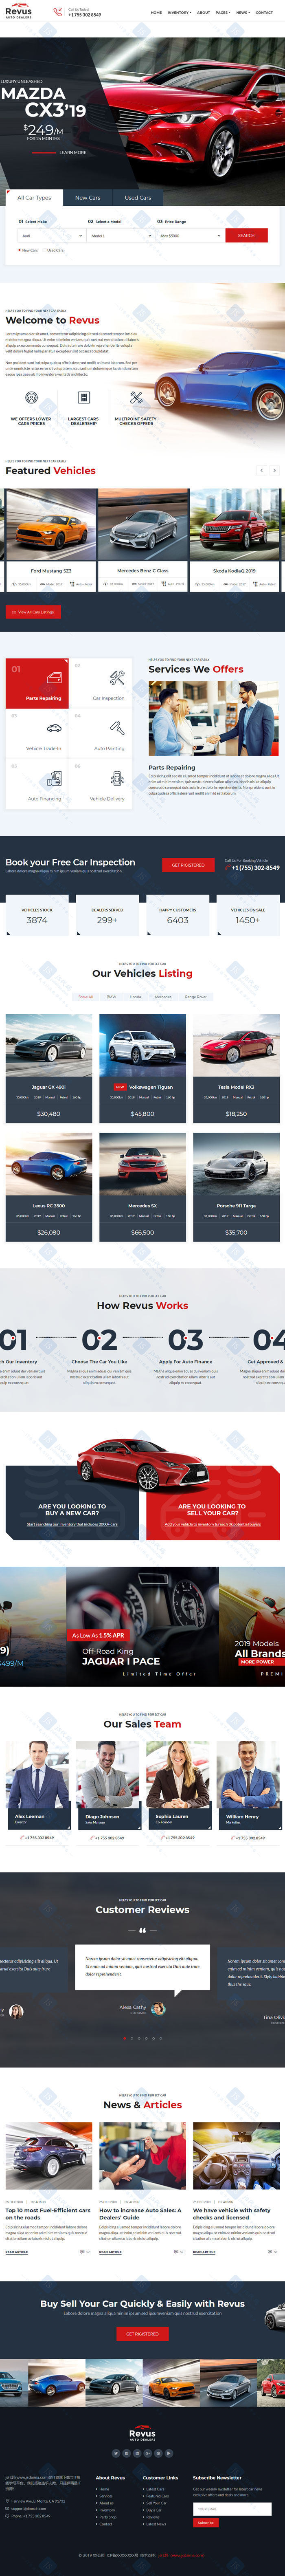 宽屏大气响应式汽车销售服务公司HTML5网站模板